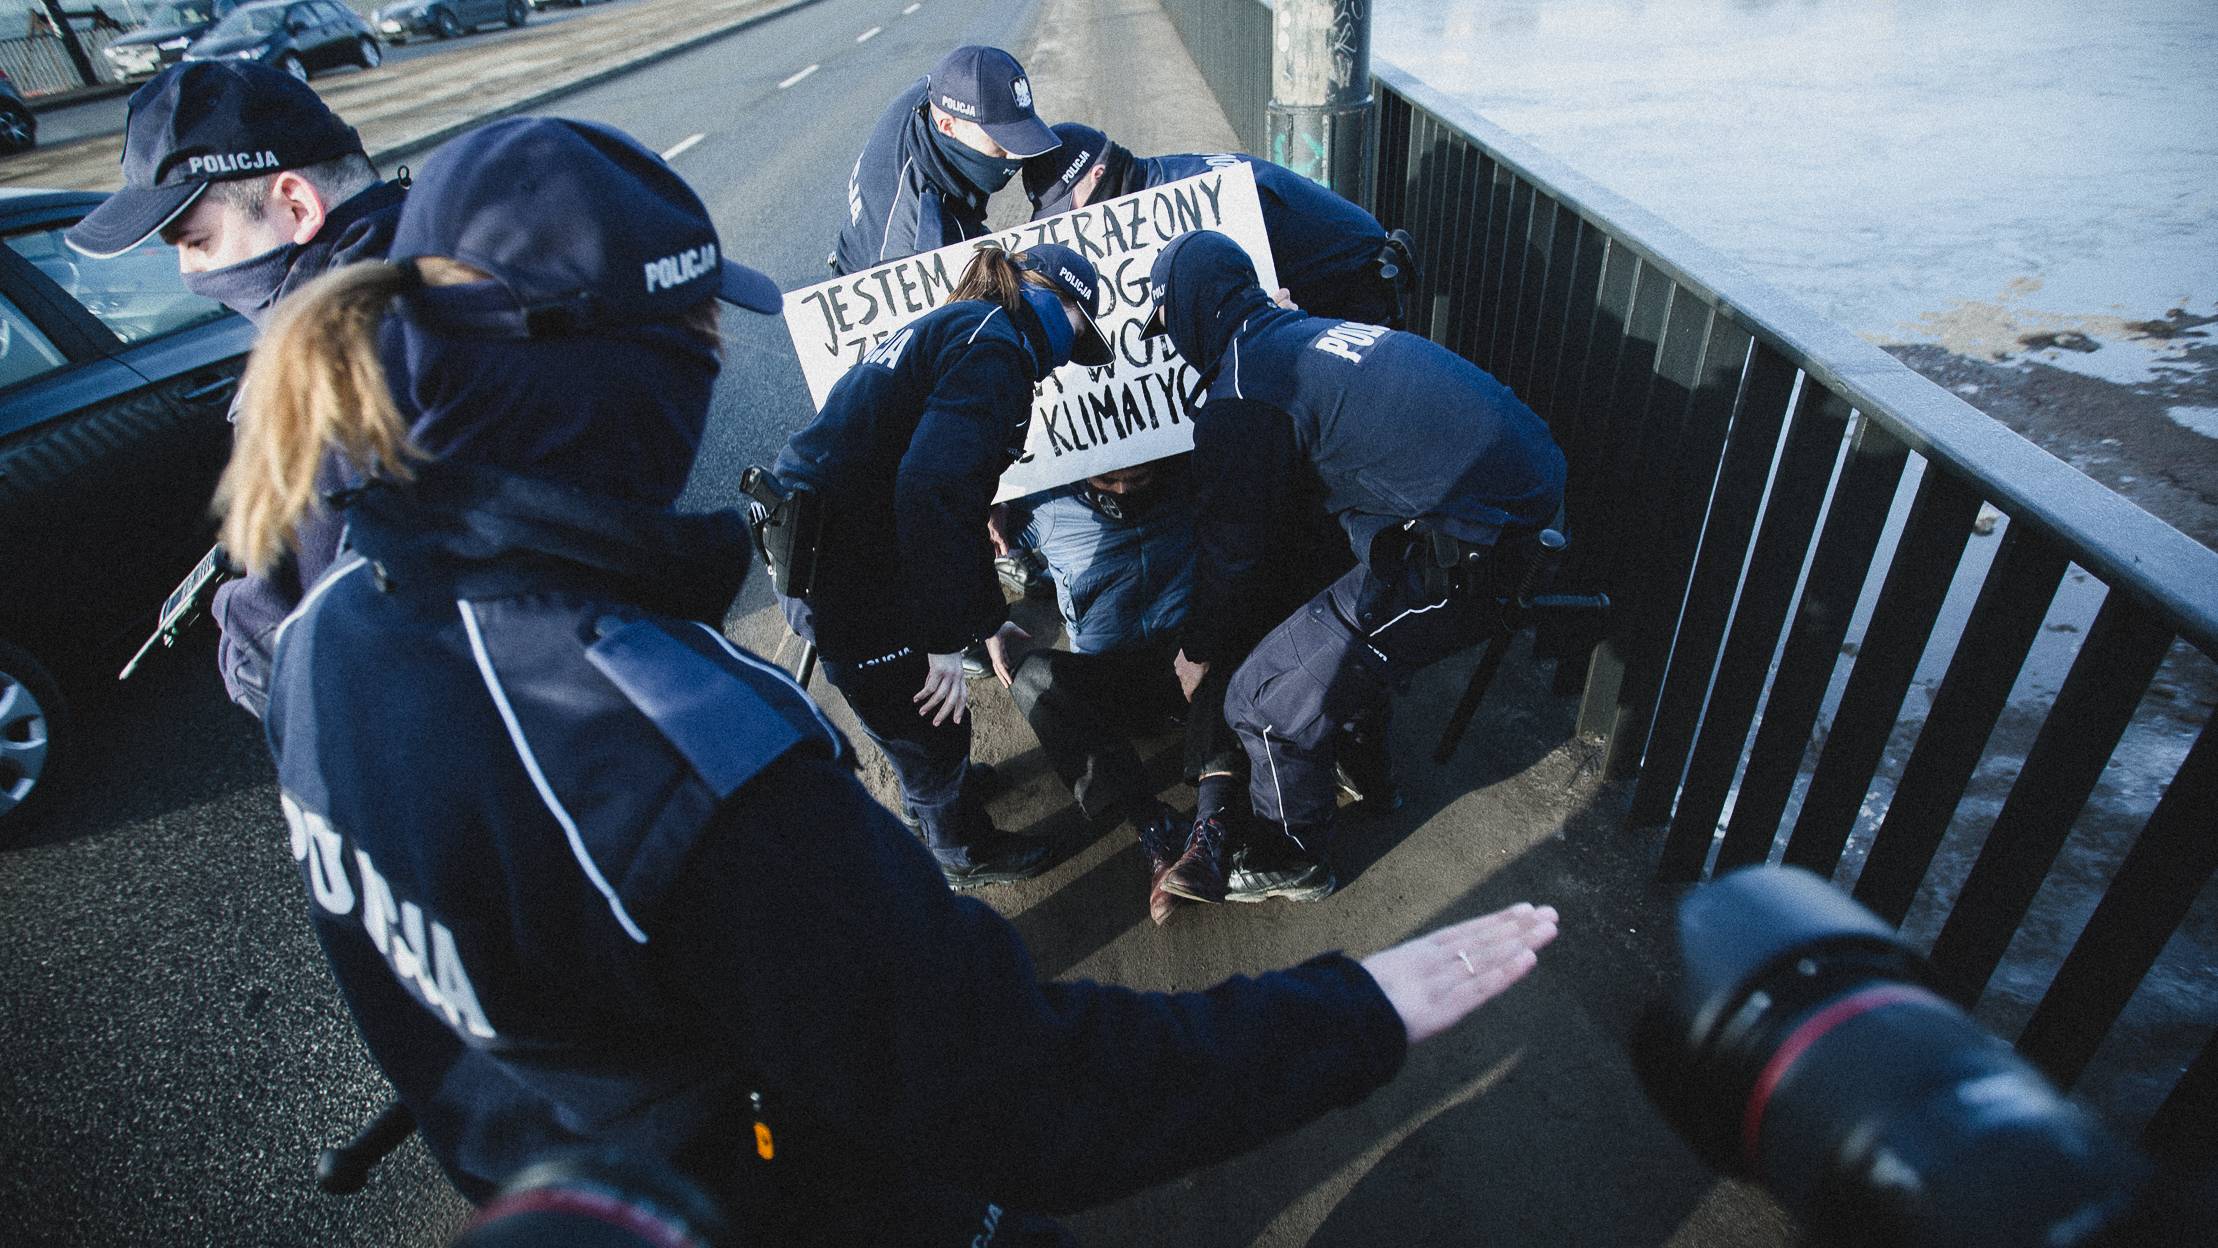 Protest klimatyczny, Warszawa, 25.02.2021